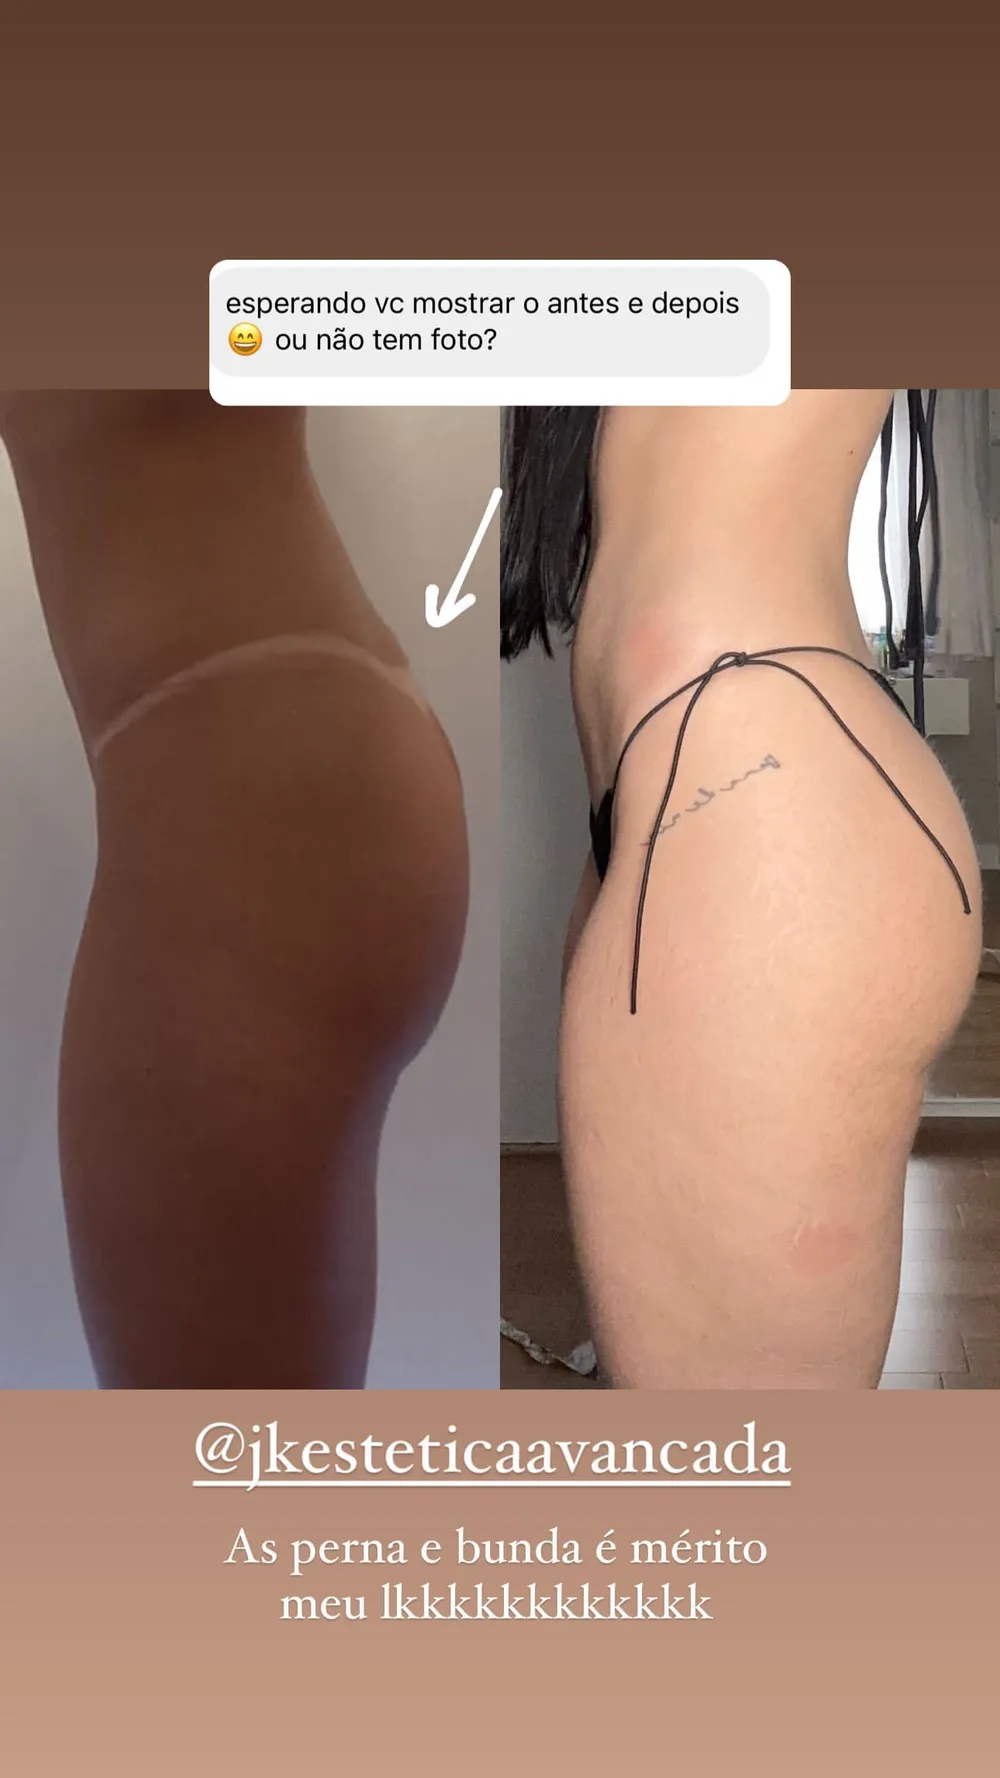 Maria Lina mostra antes e depois de cirurgias plásticas